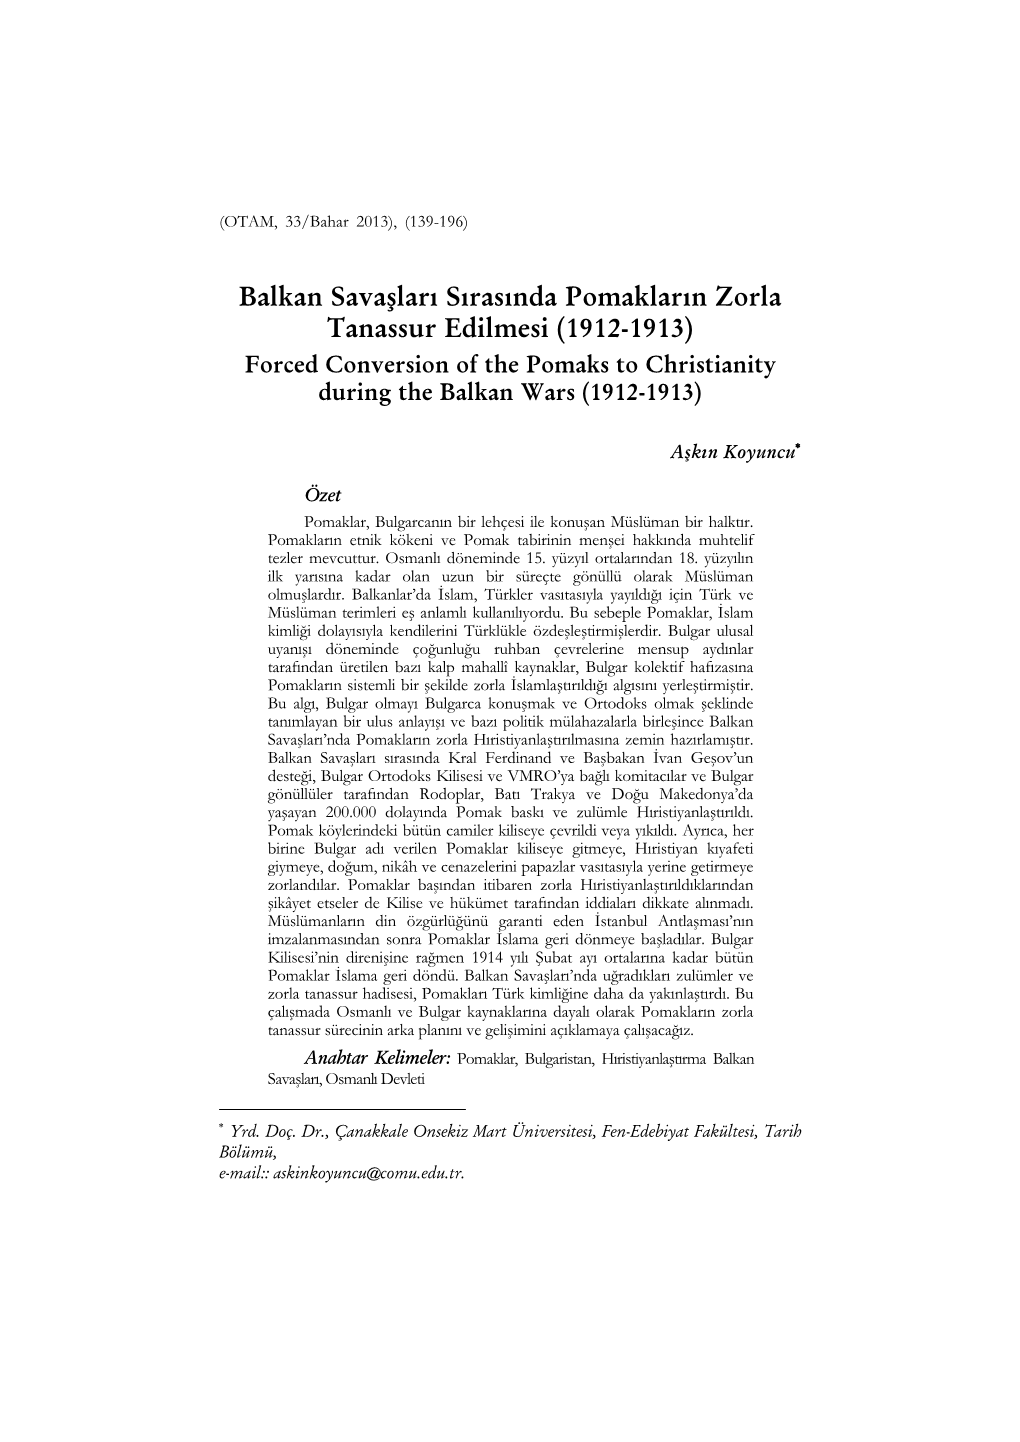 Balkan Savaşları Sırasında Pomakların Zorla Tanassur Edilmesi (1912-1913) Forced Conversion of the Pomaks to Christianity During the Balkan Wars (1912-1913)